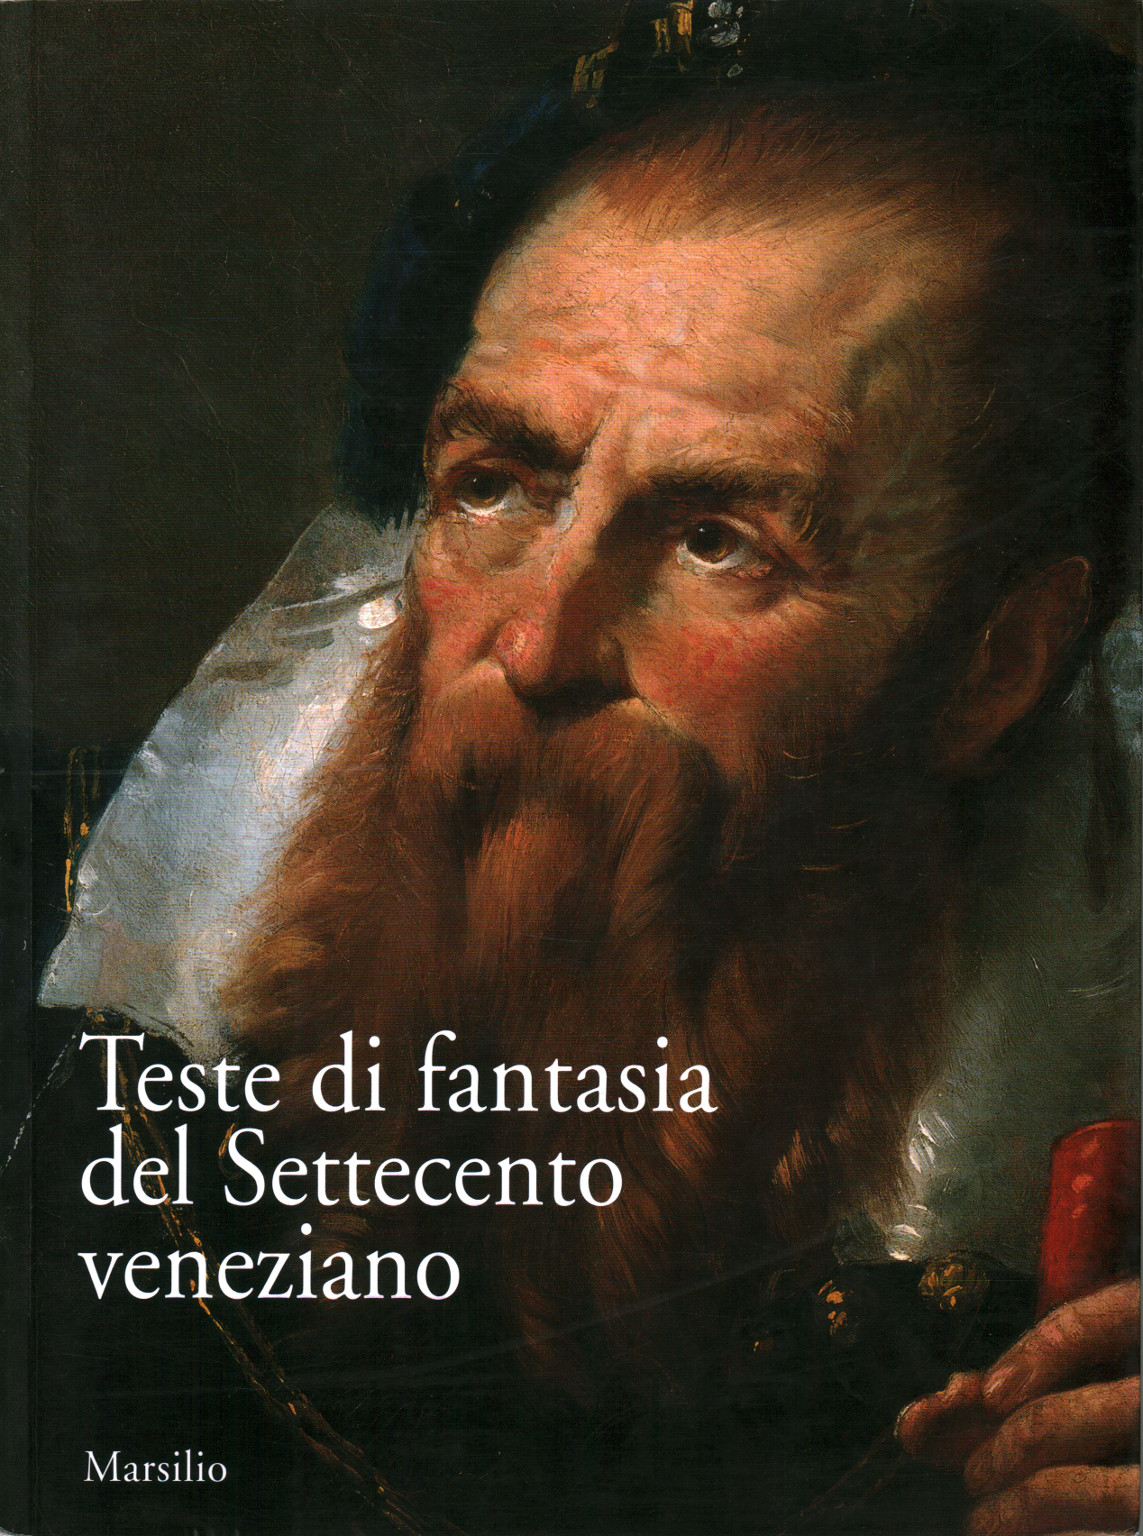 Teste di fantasia del Settecento veneziano, s.a.